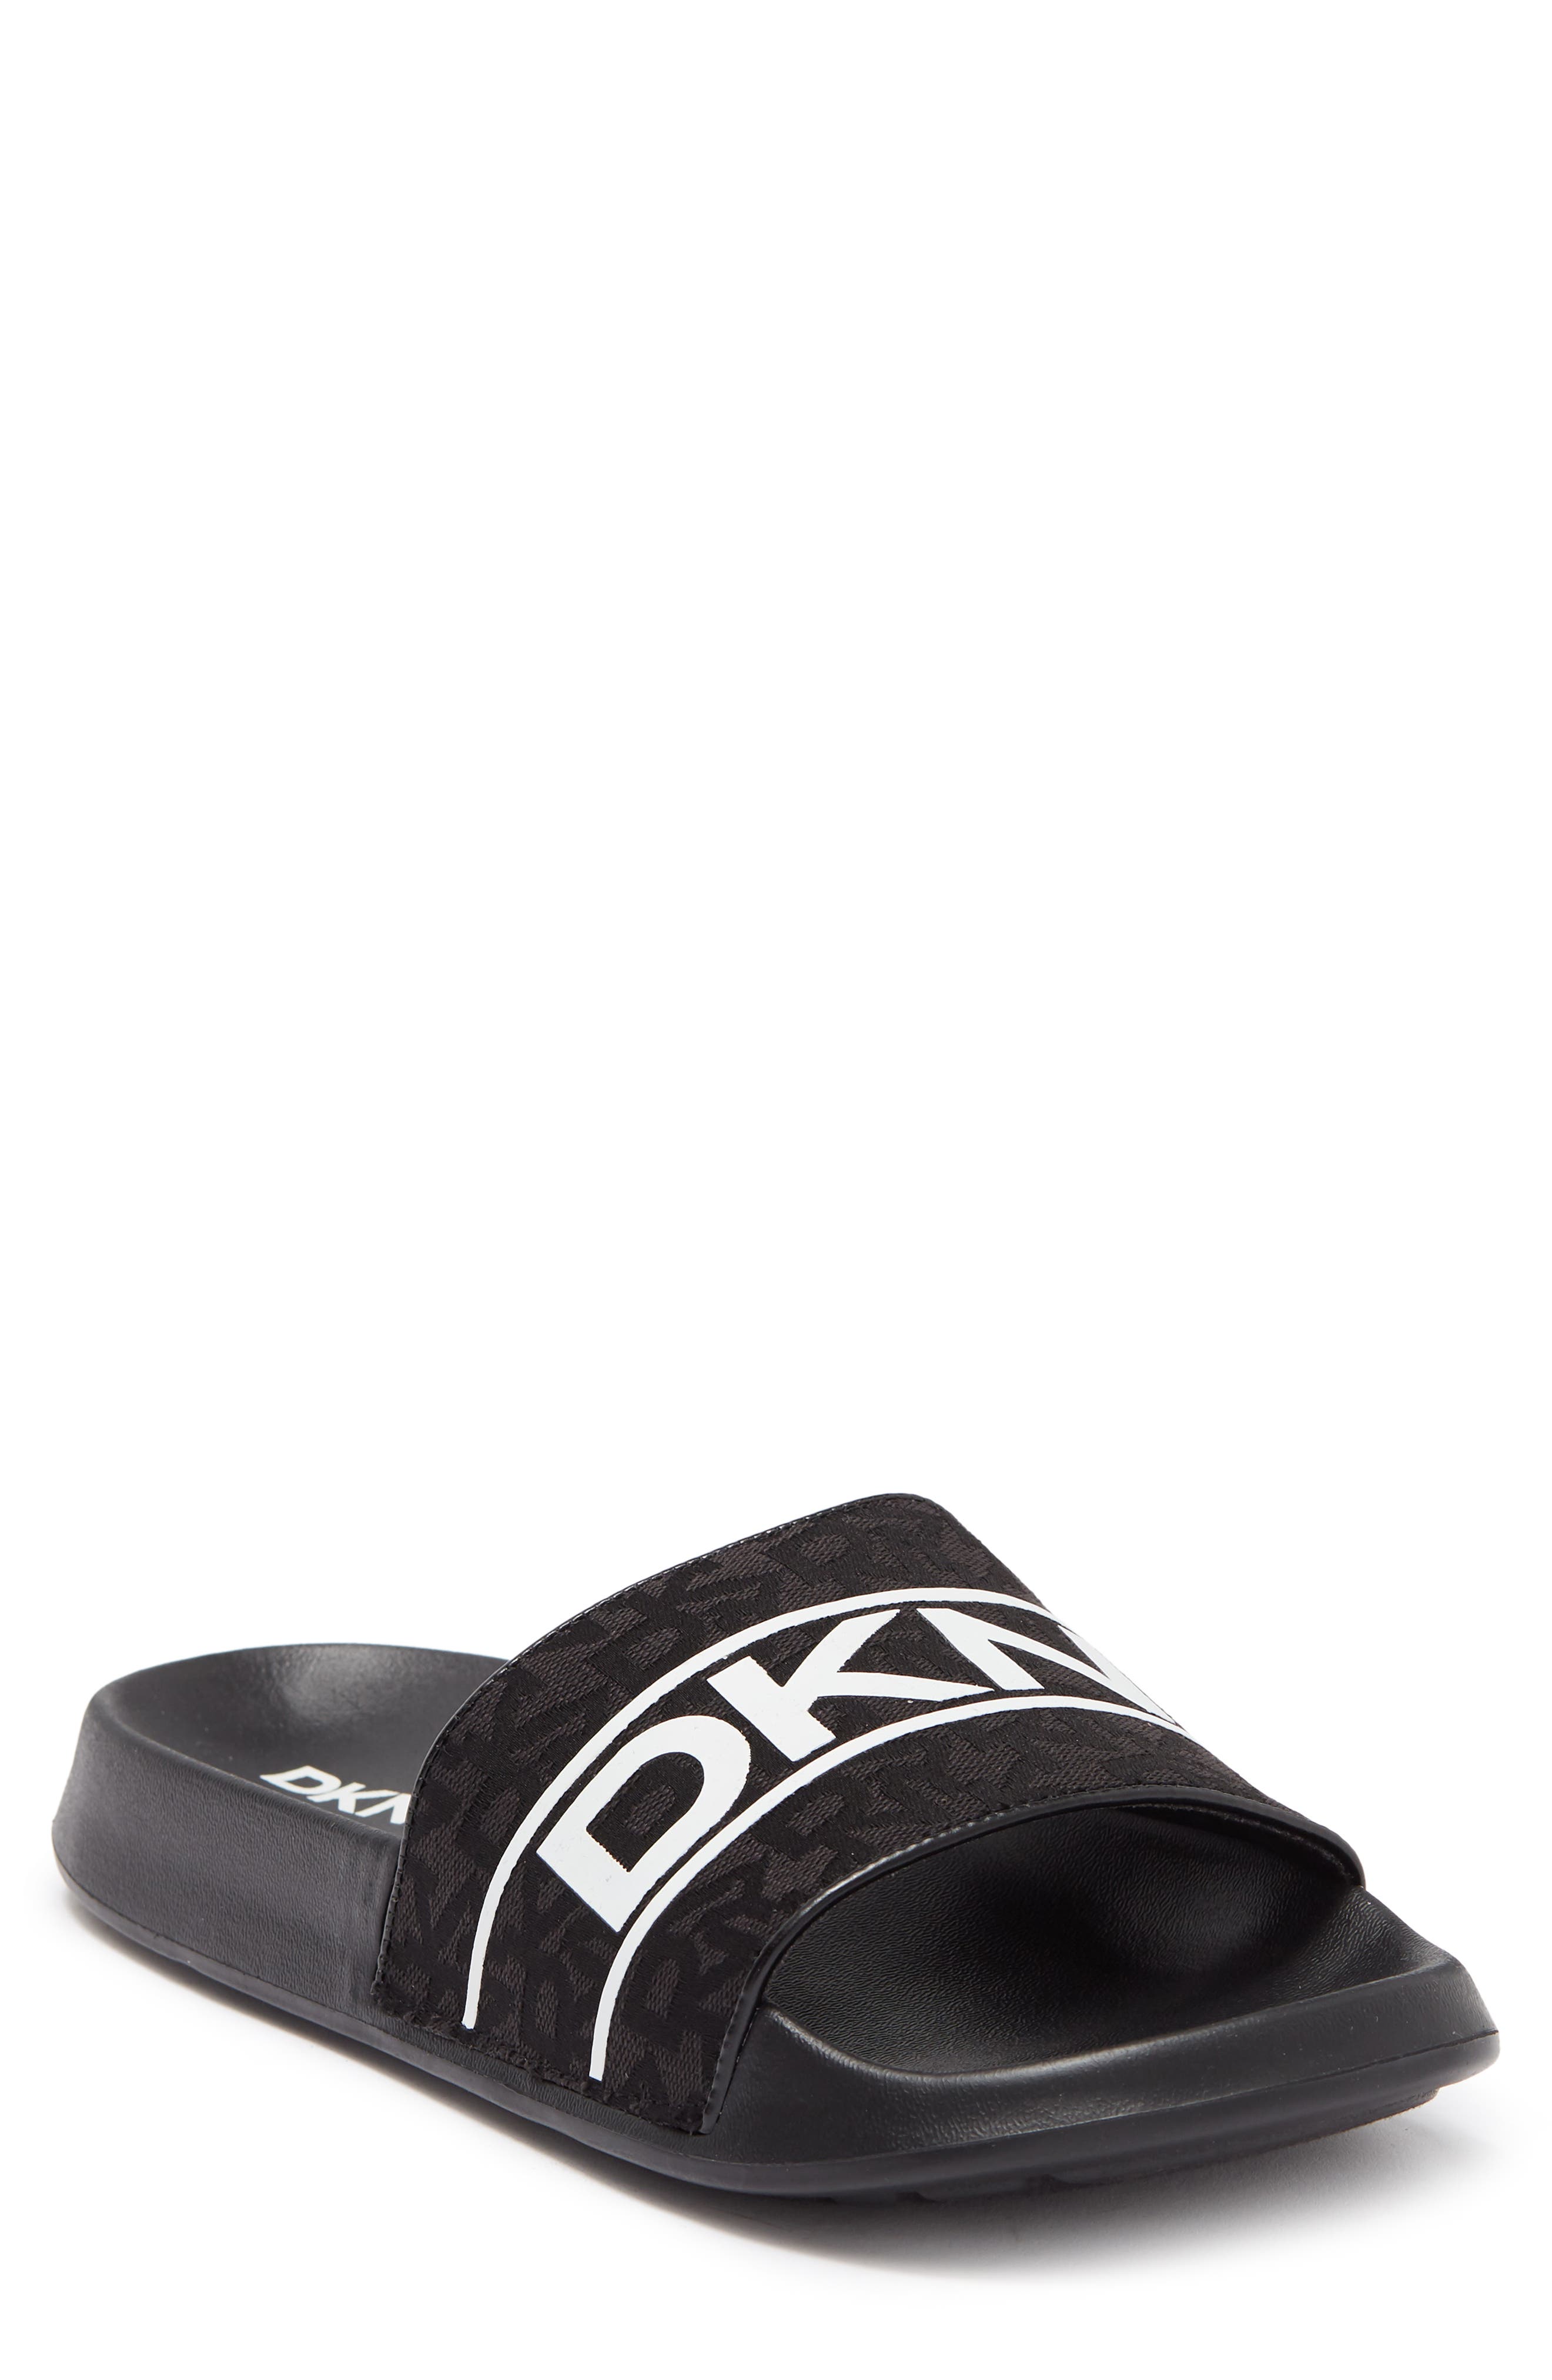 Dkny Logo Monogram Slide Sandal In Black/ White | ModeSens